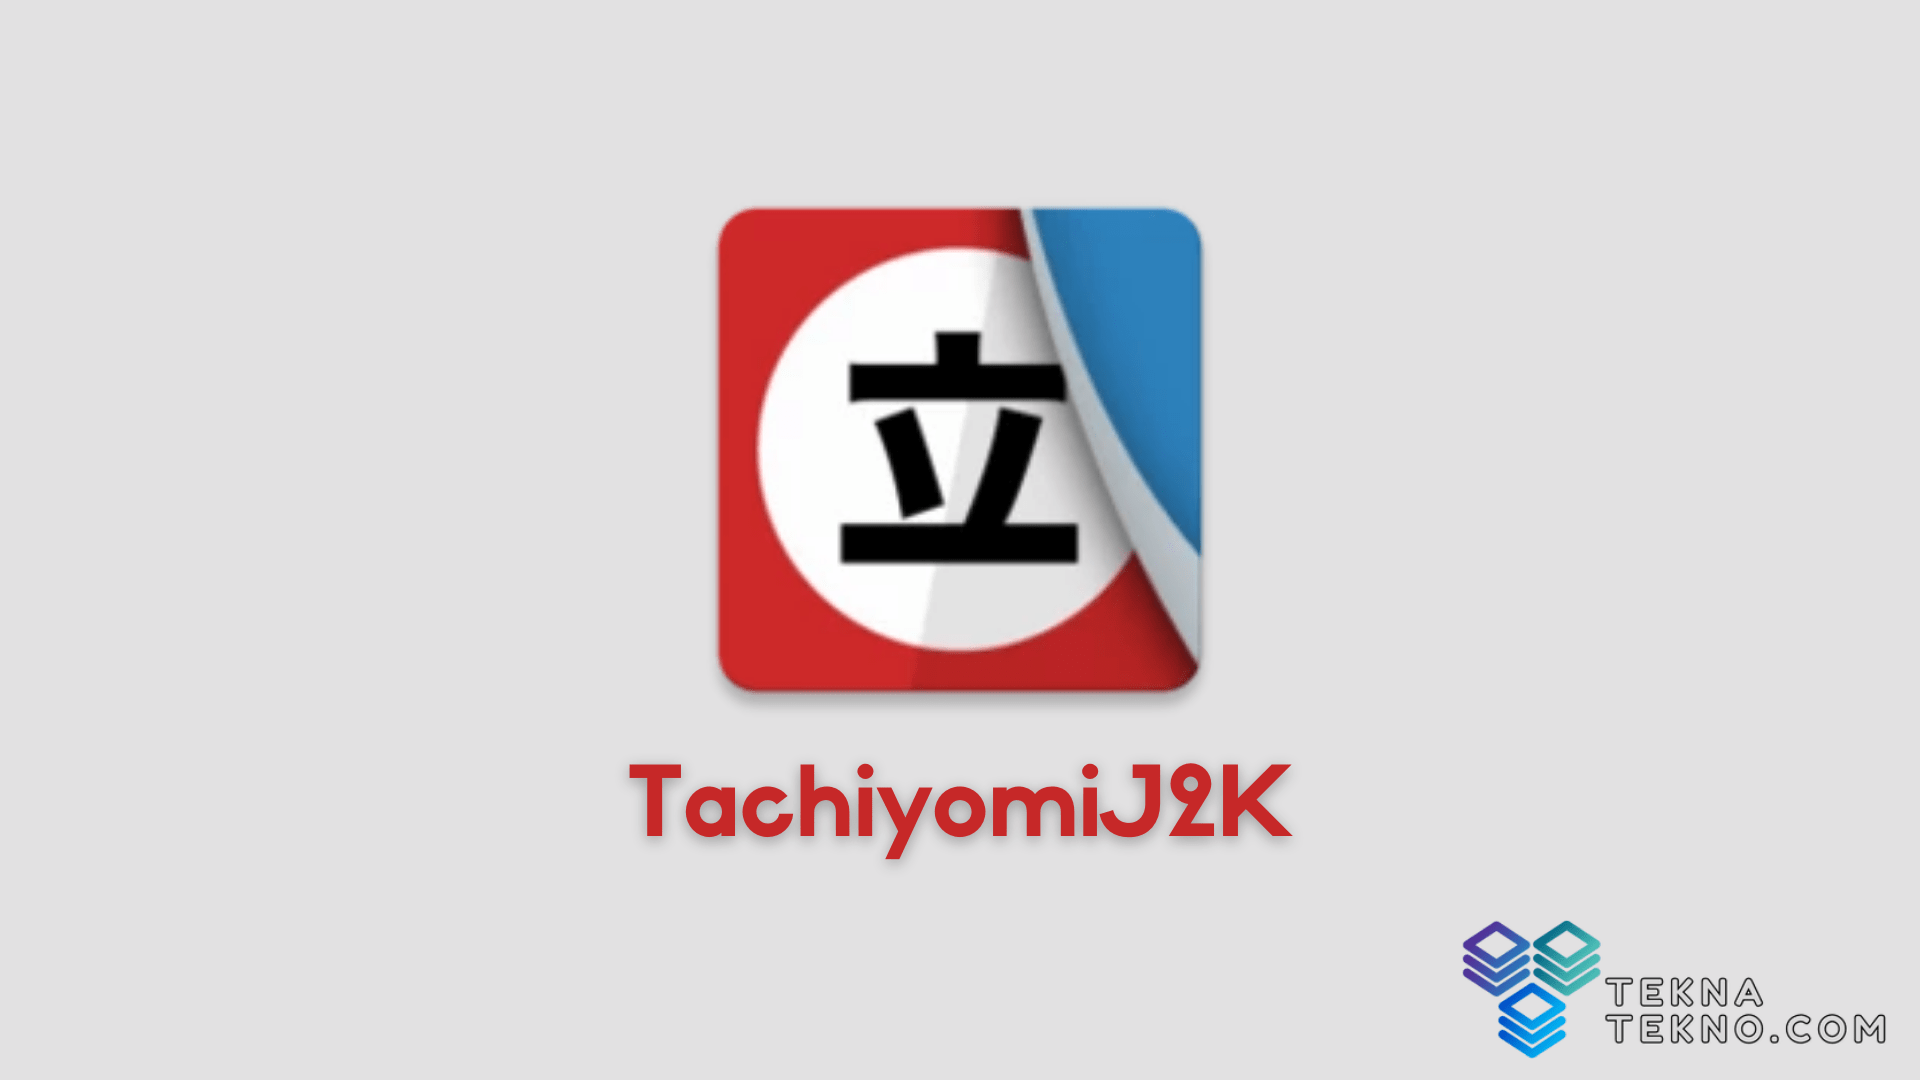 Download Tachiyomi J2K Apk Terbaru, Aplikasi Pembaca Manga di Android dan iOS